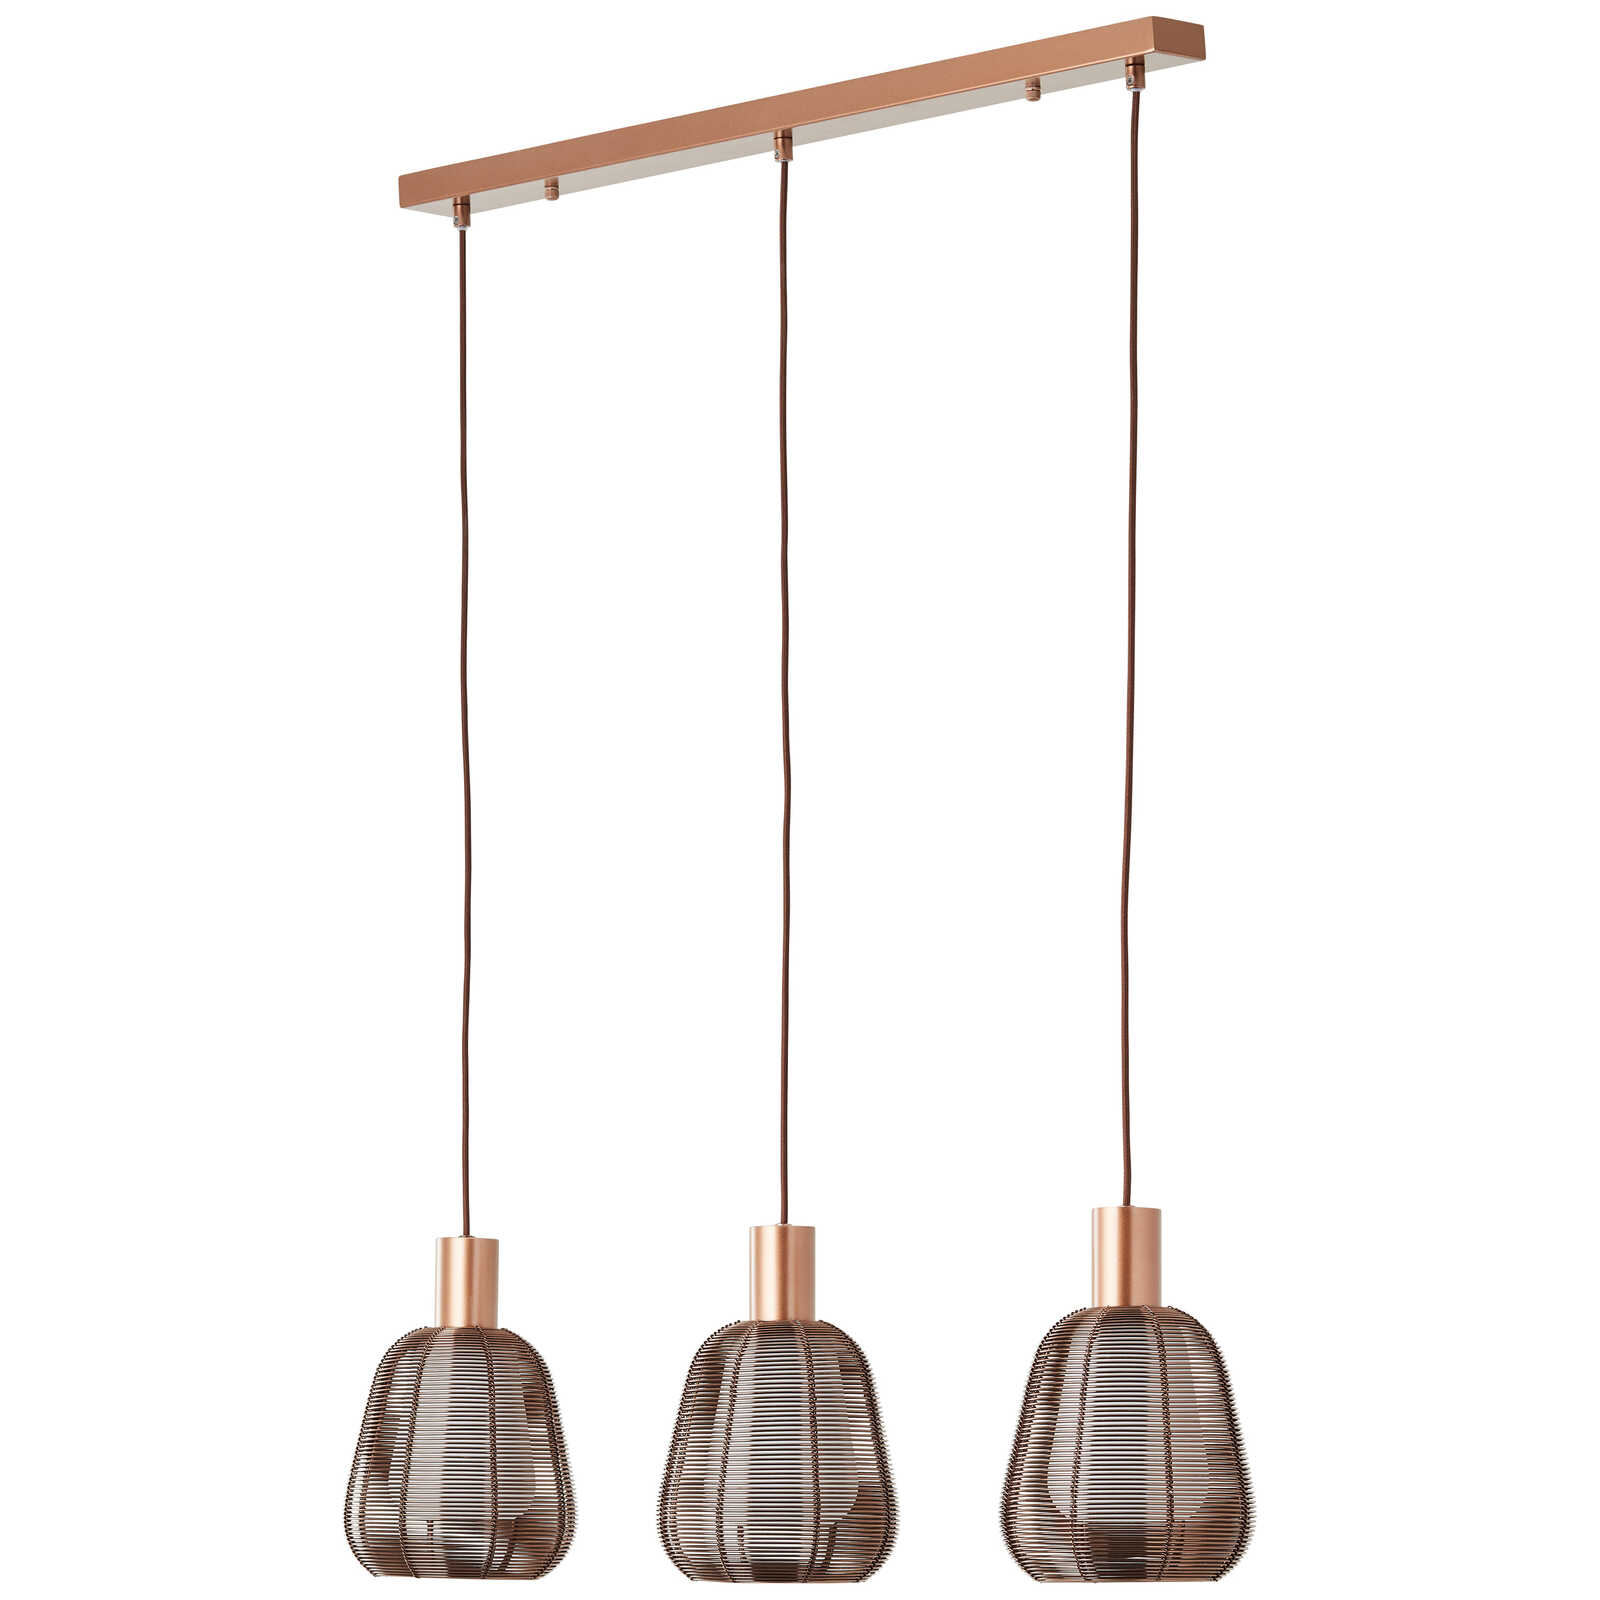             Metalen hanglamp - Thore 2 - Bruin
        